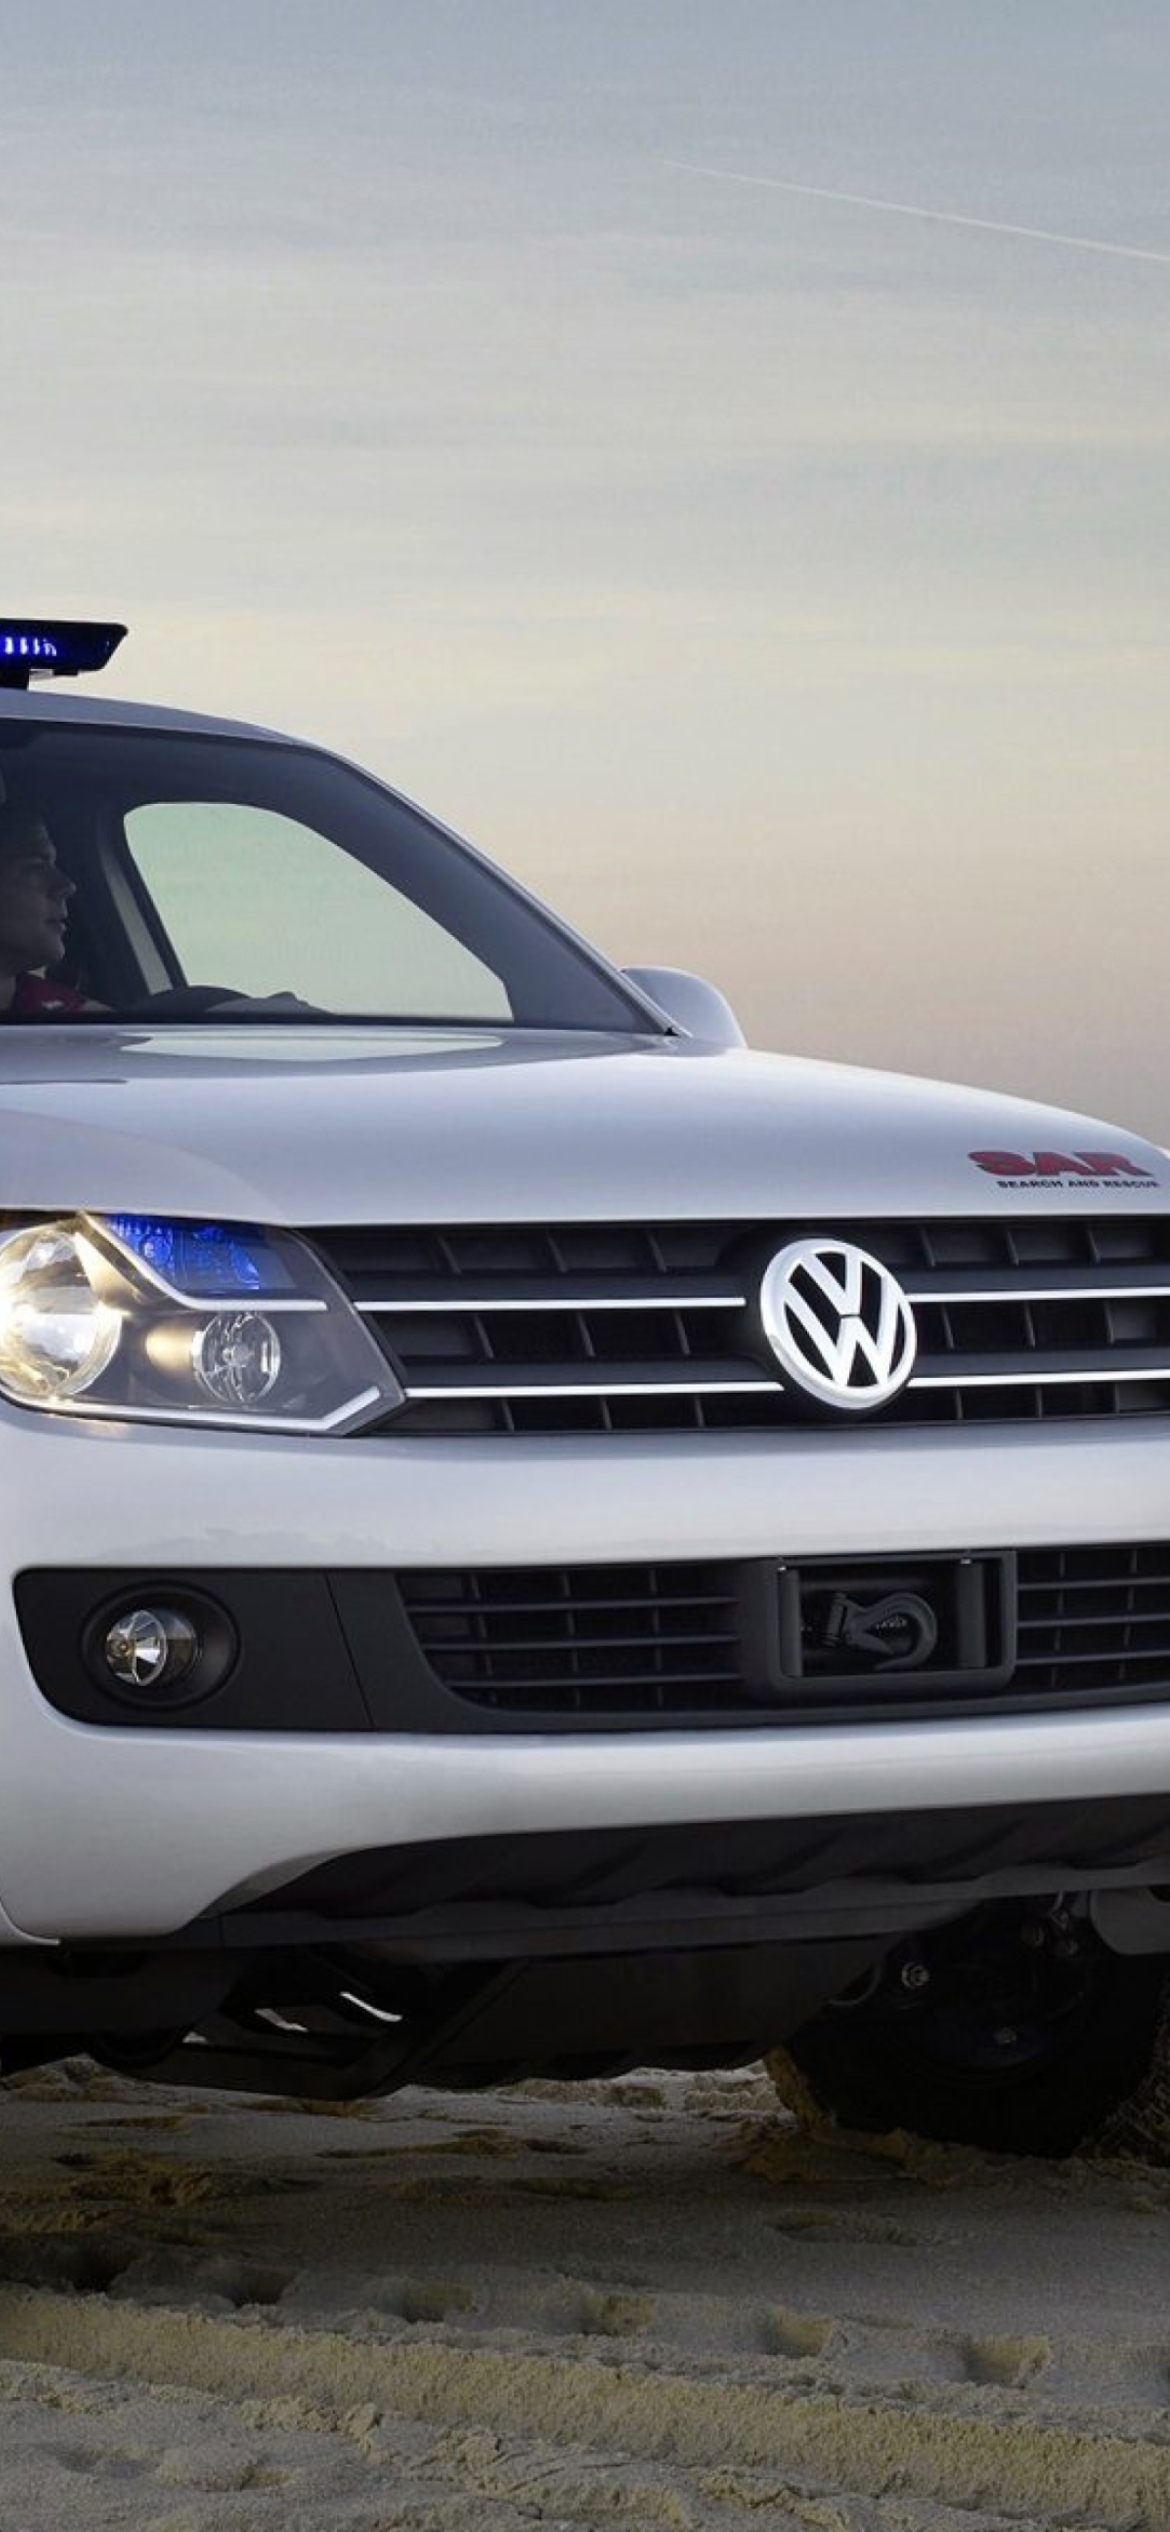 Volkswagen Pickup Concept screenshot #1 1170x2532